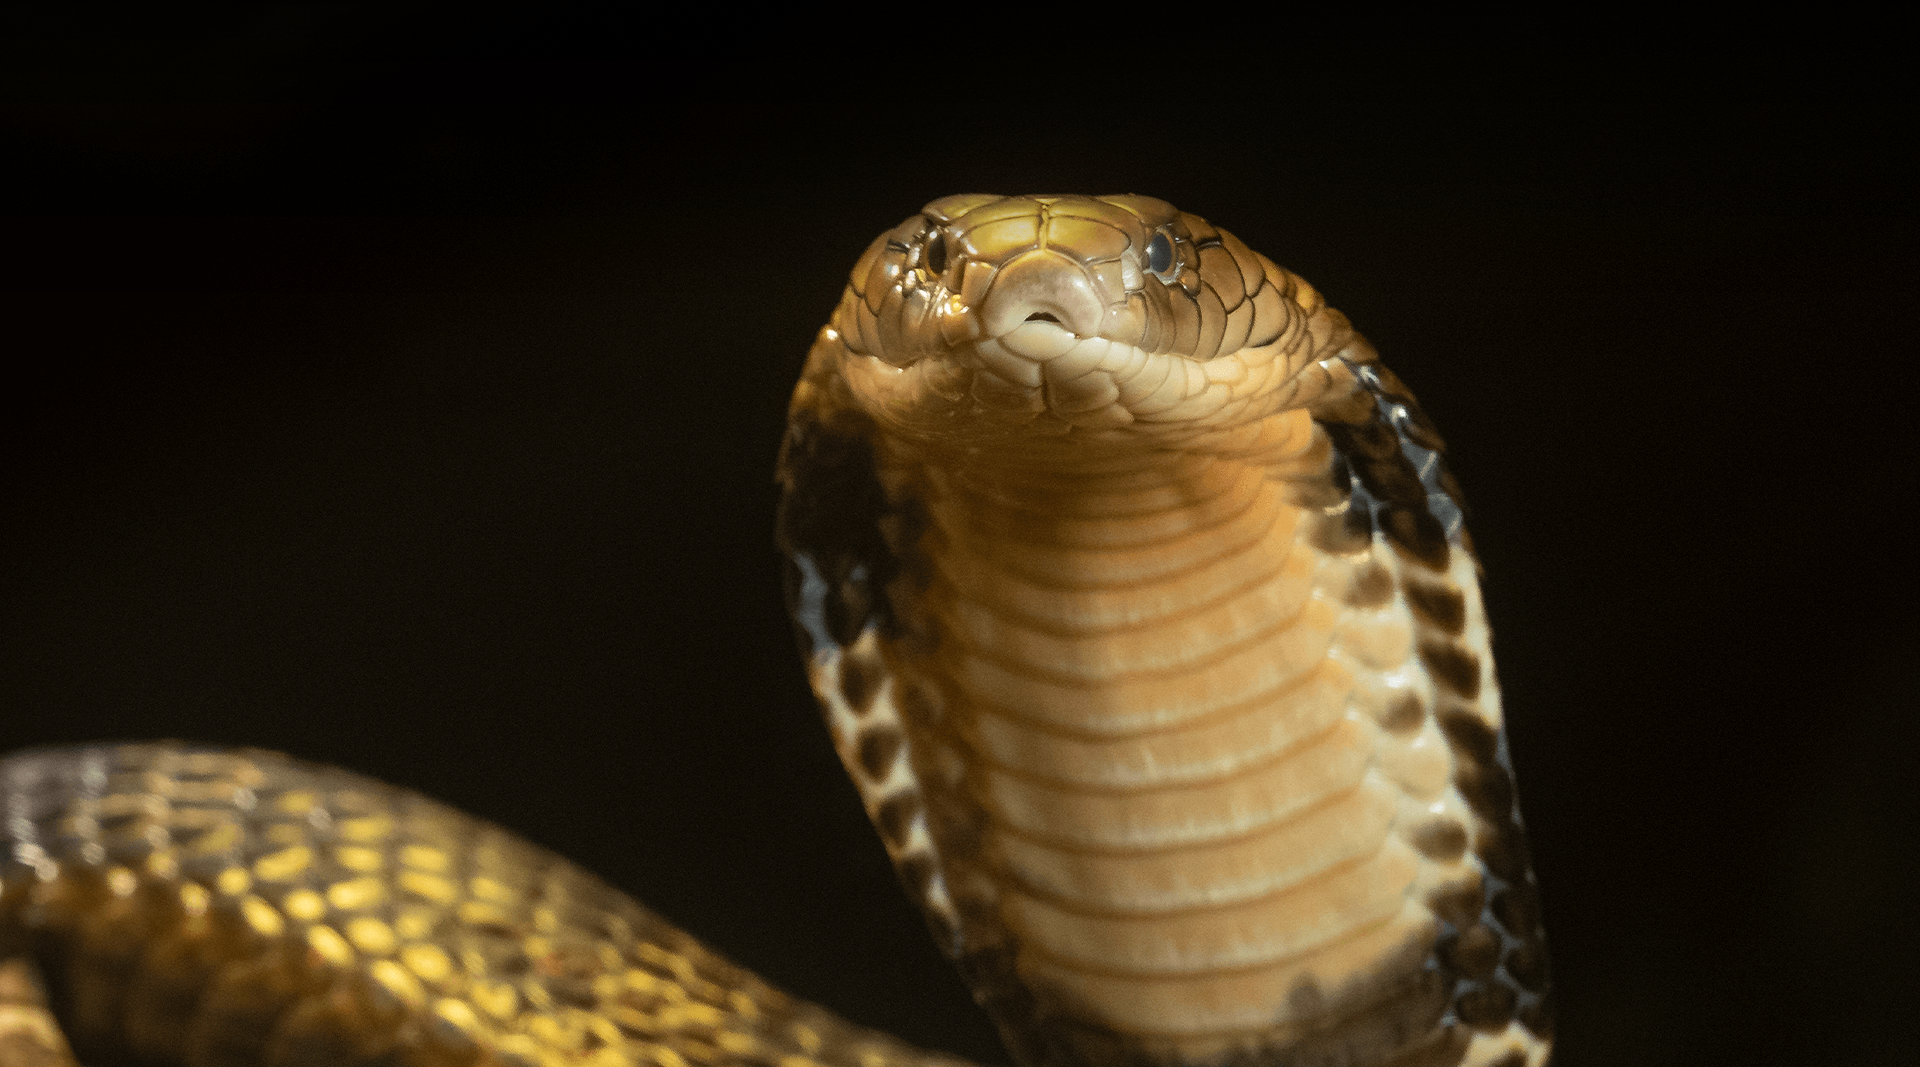 cobra snakes